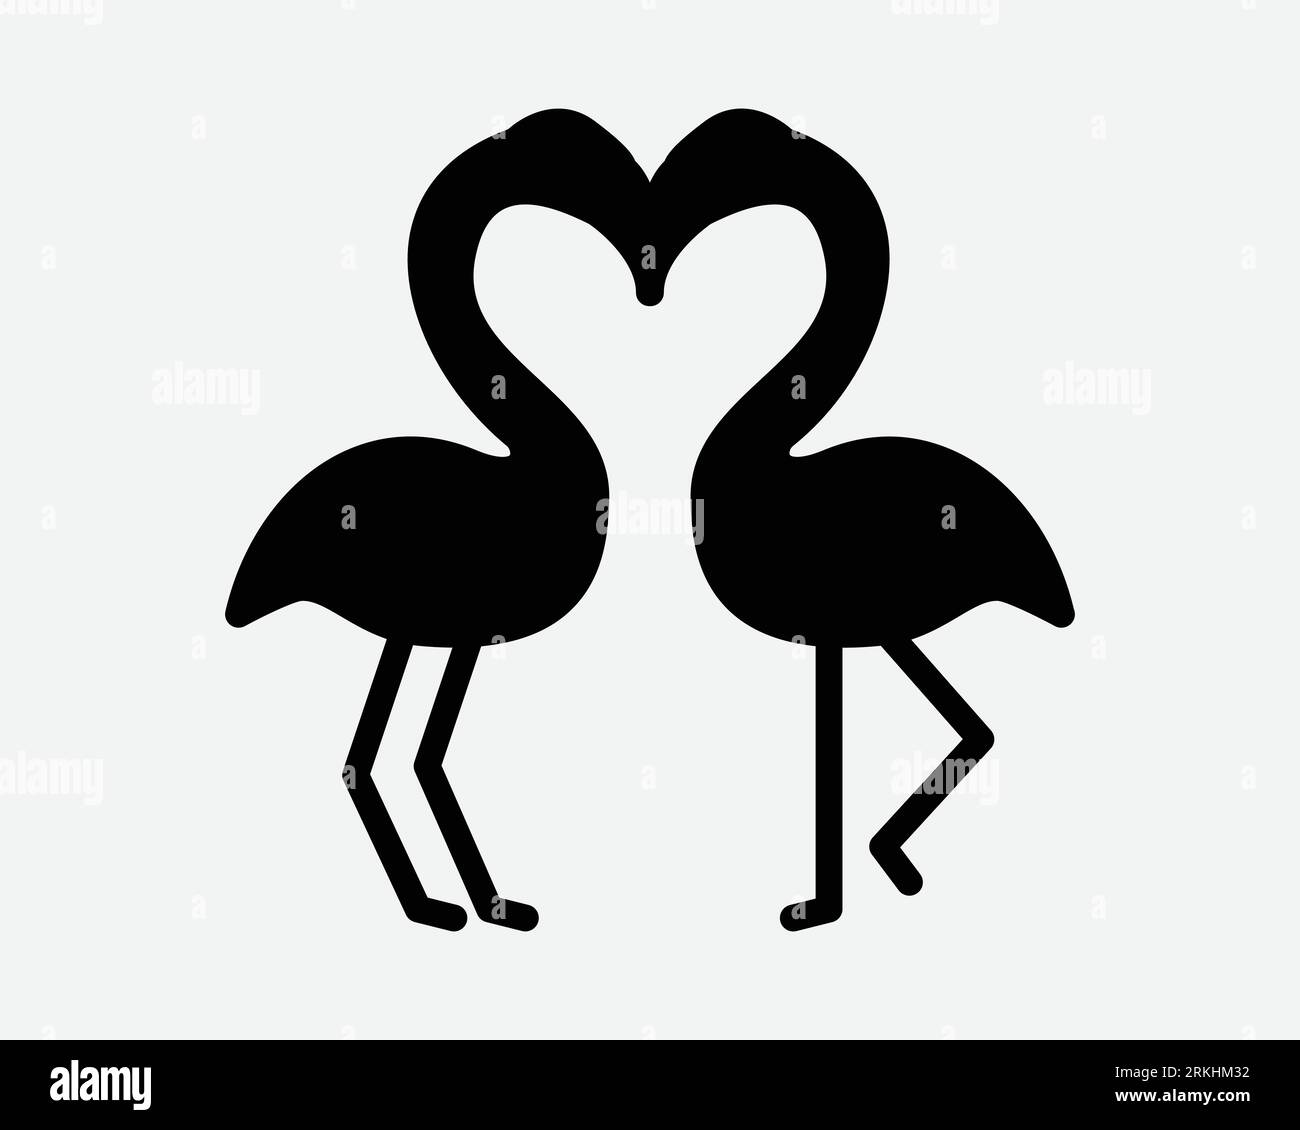 Flamingo Love Icon couple deux paires Bird Kiss Kissing Romance romantique Lover Valentine Wildlife Animal Zoom Back Silhouette forme signe symbole vecteur Illustration de Vecteur